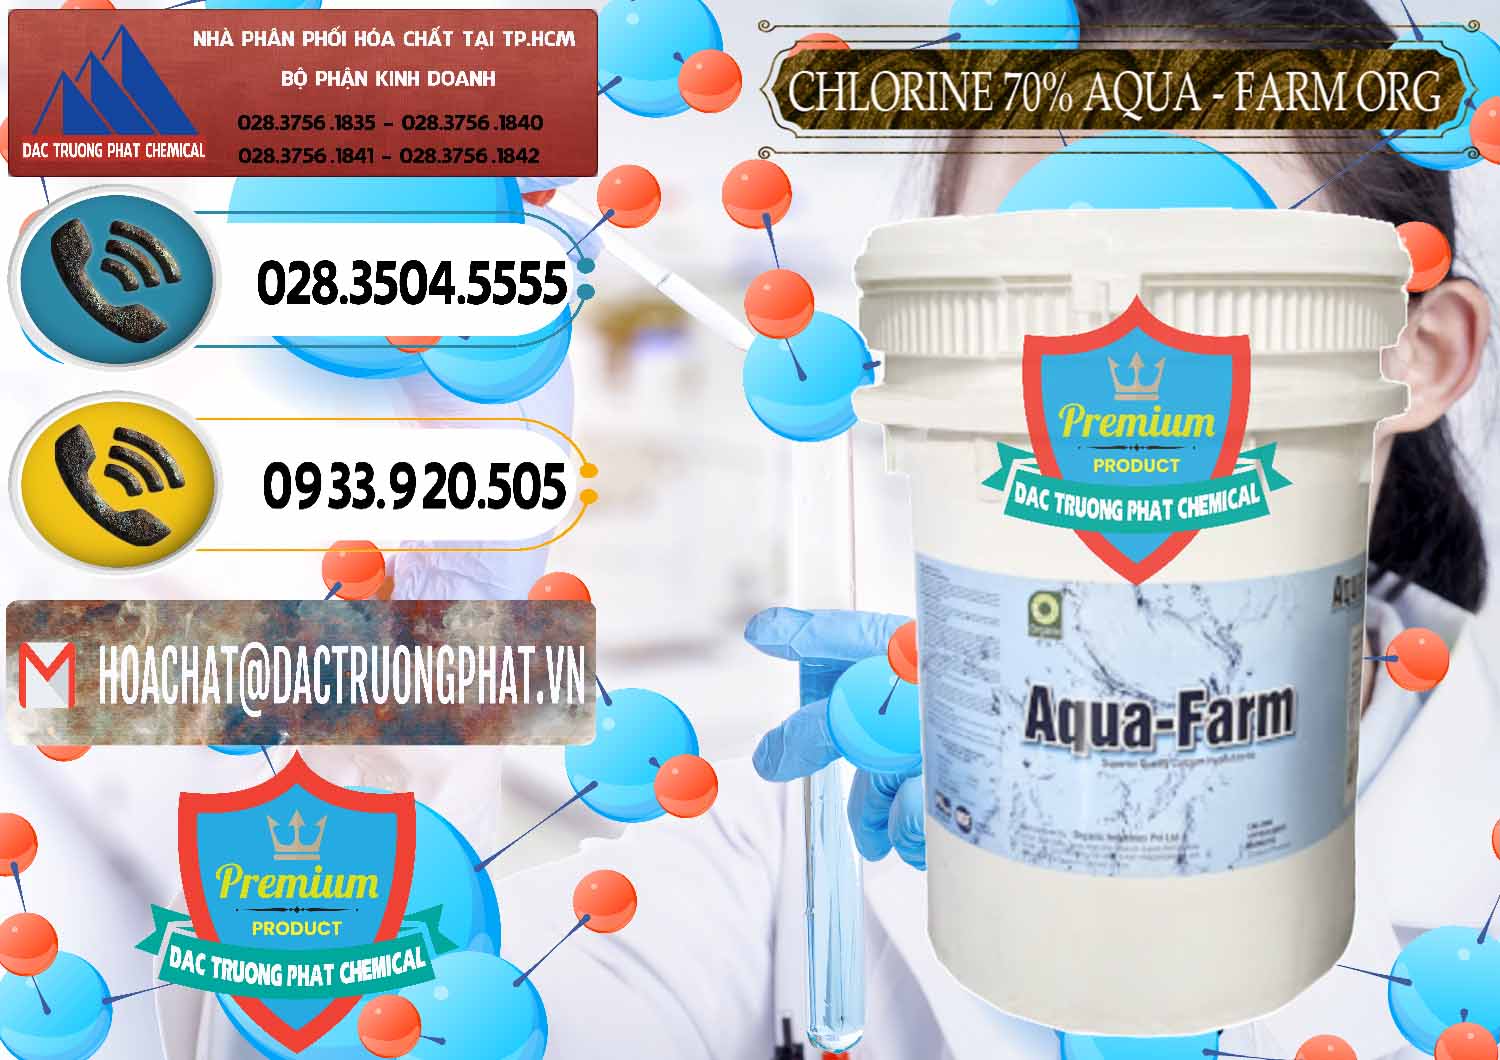 Đơn vị nhập khẩu & bán Chlorine – Clorin 70% Aqua - Farm ORG Organic Ấn Độ India - 0246 - Nơi phân phối ( cung cấp ) hóa chất tại TP.HCM - hoachatdetnhuom.vn